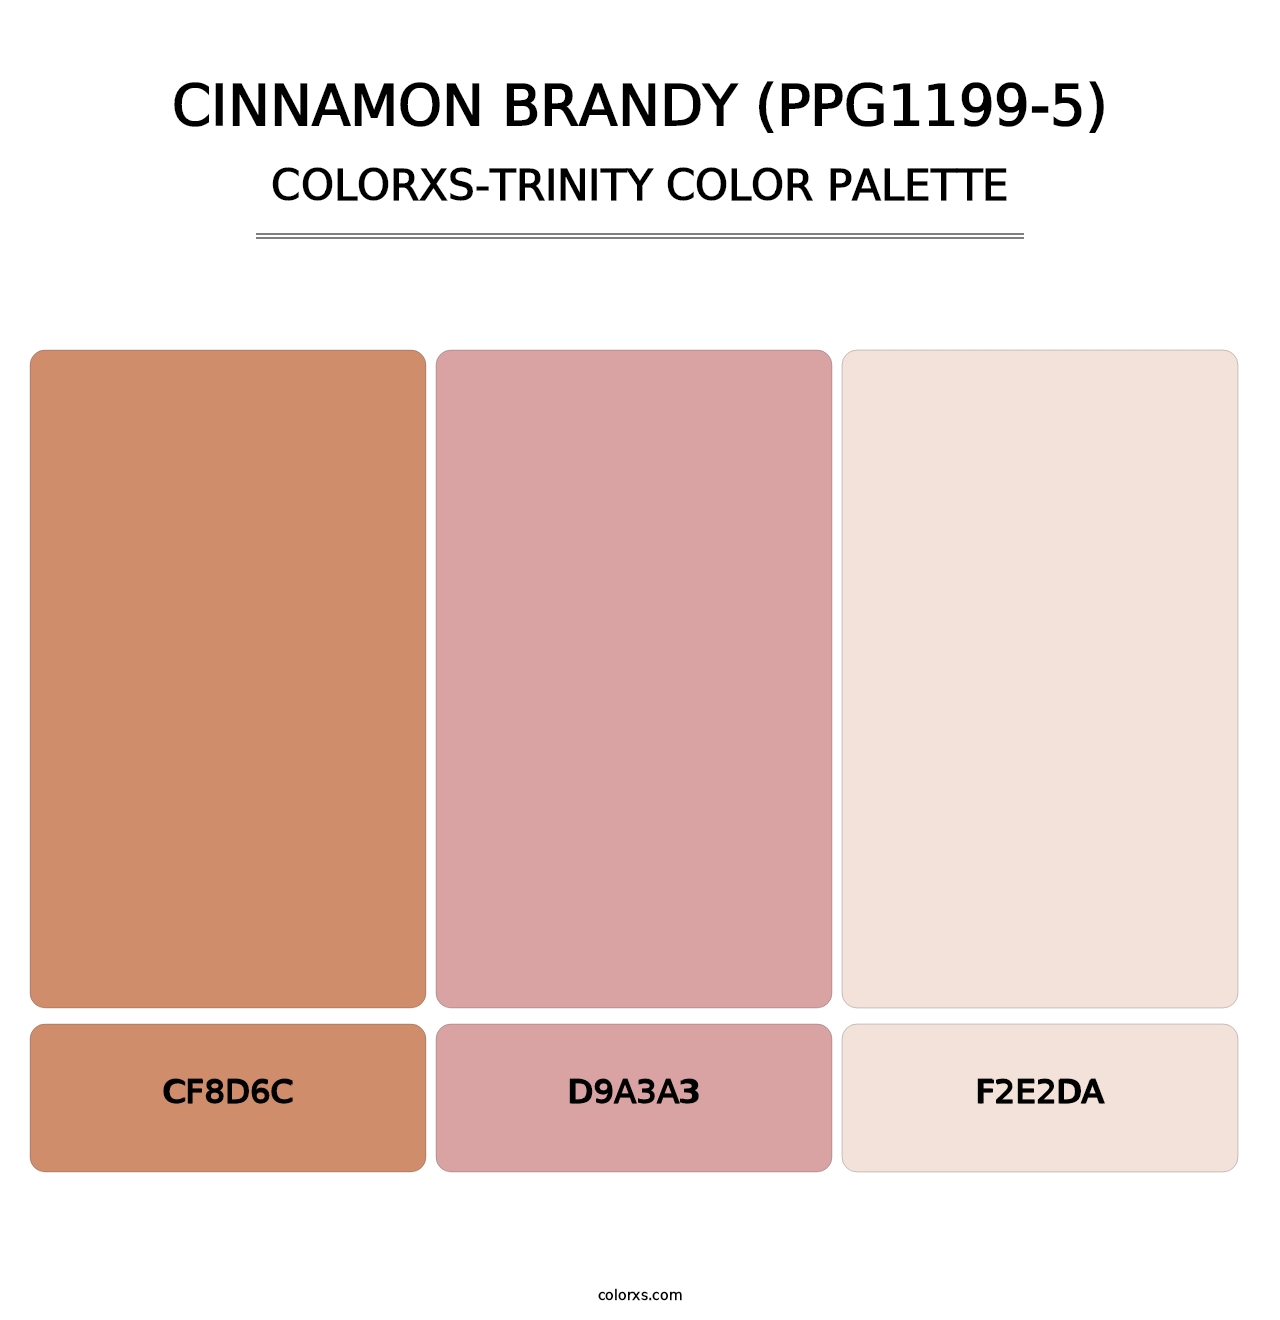 Cinnamon Brandy (PPG1199-5) - Colorxs Trinity Palette